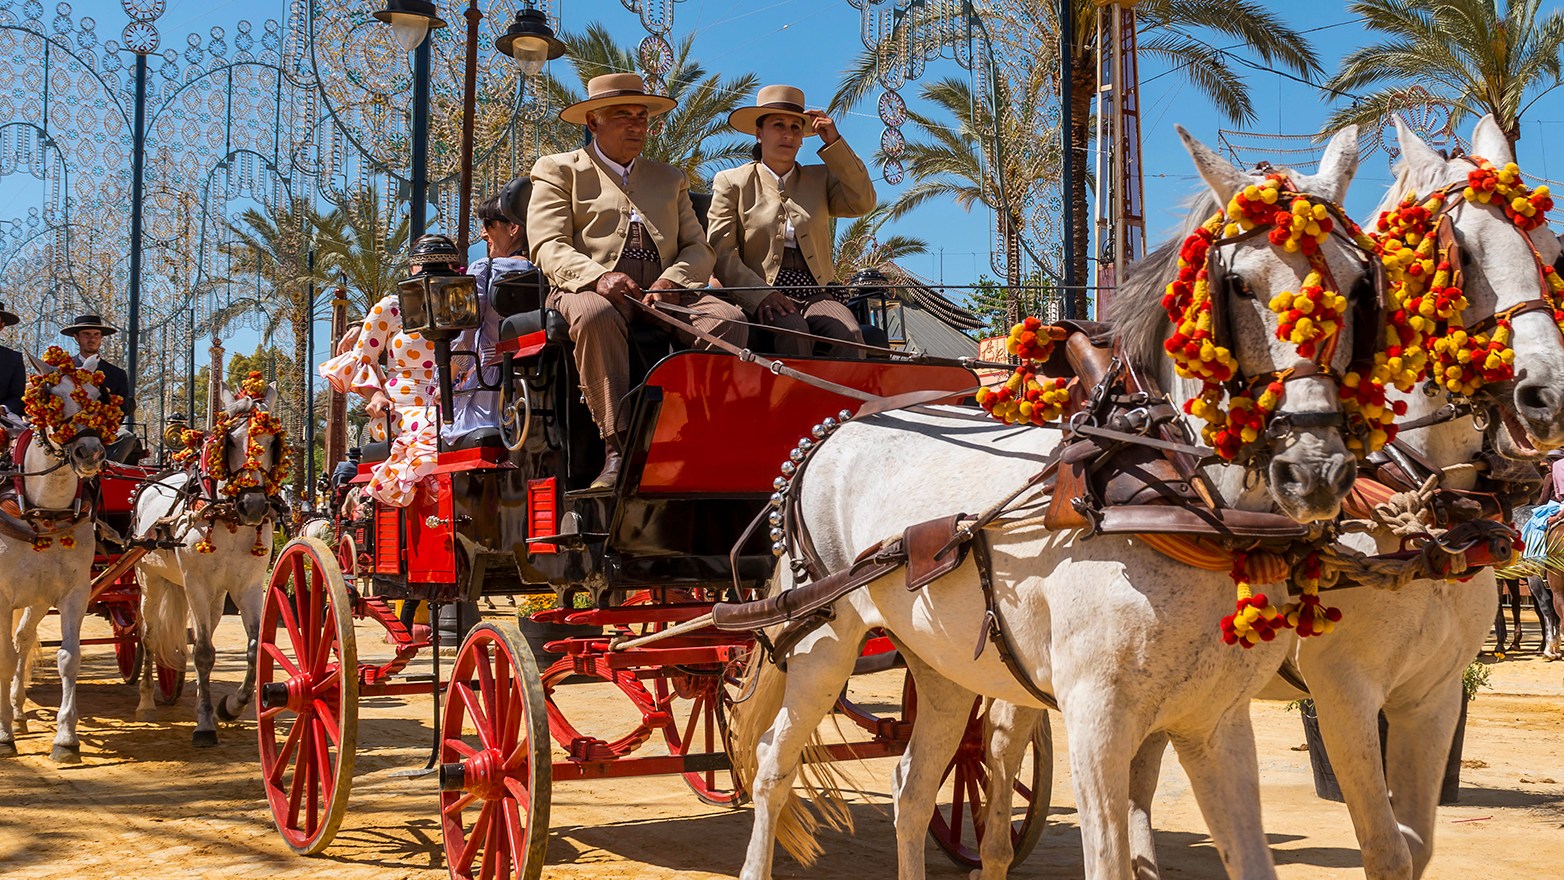 Traditional festivities in Feria de Caballo, Jerez de la Frontera